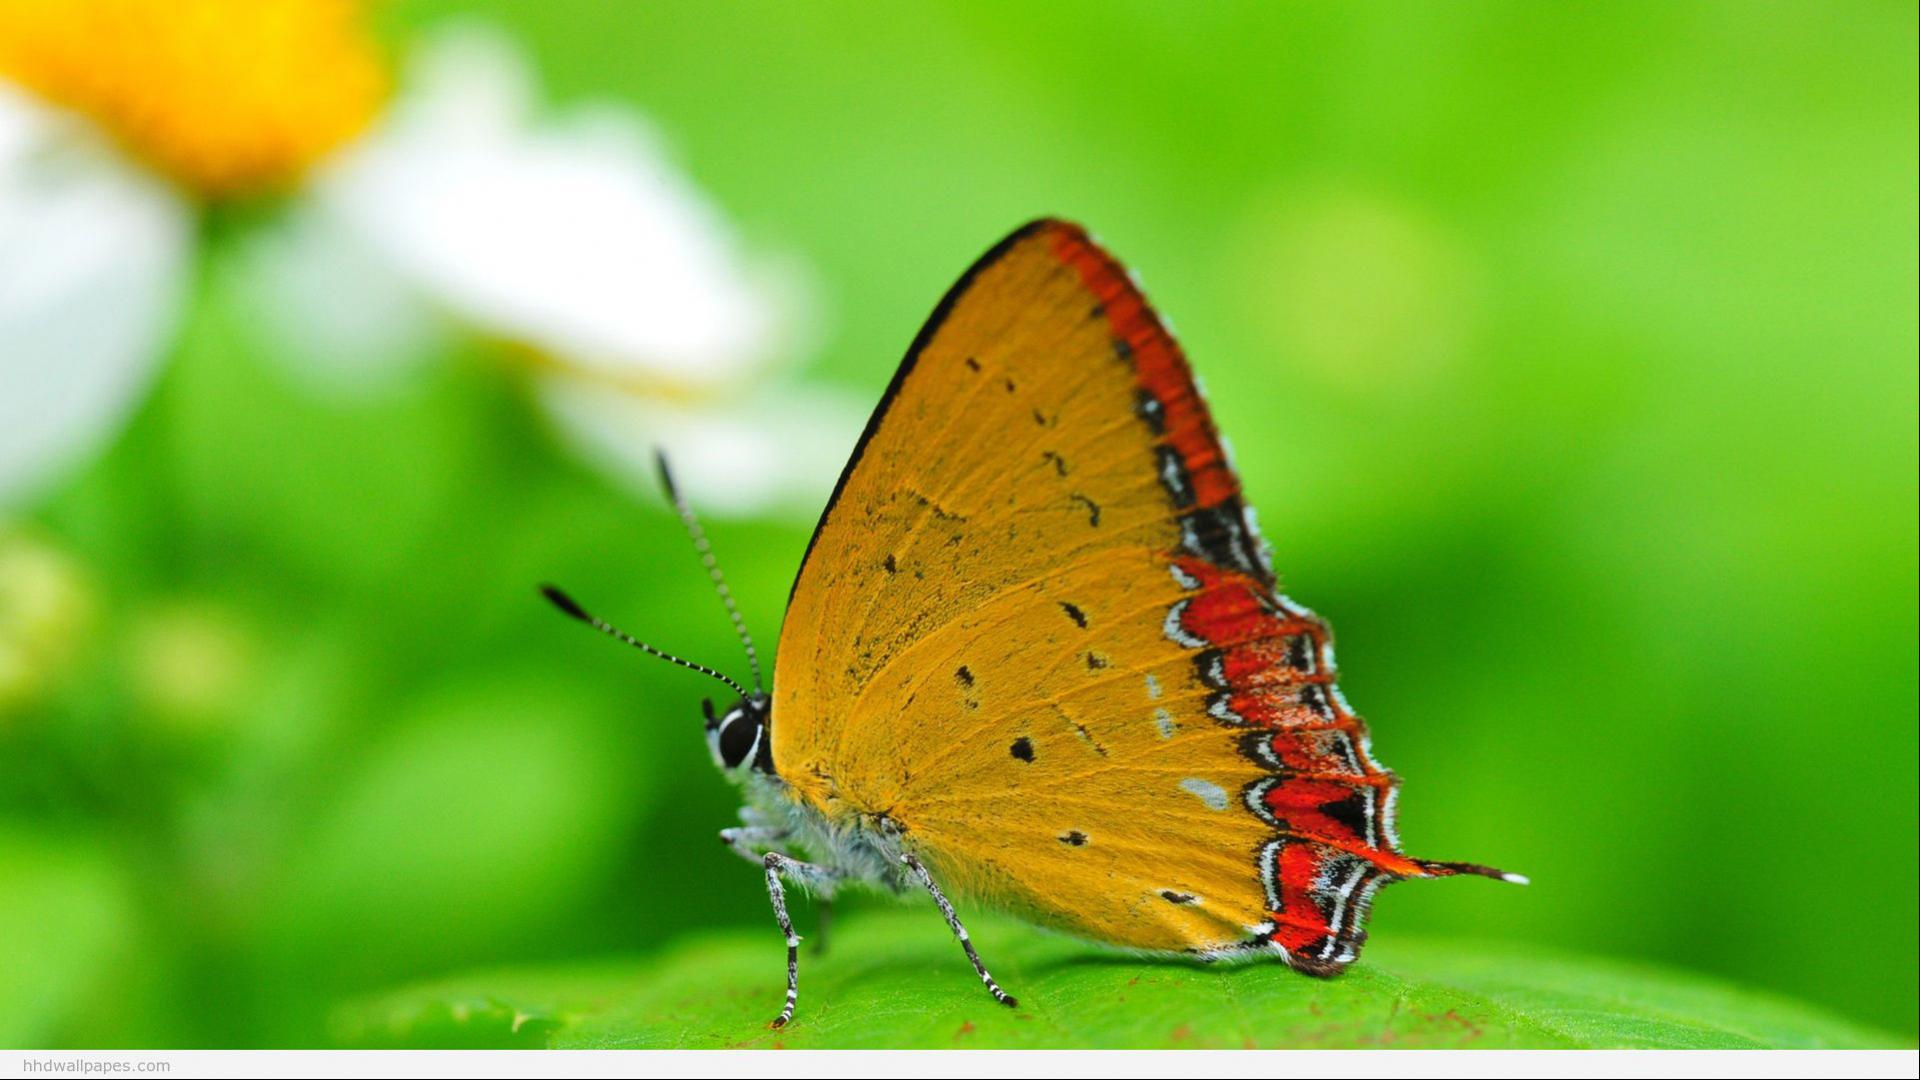 sfondi hd per pc 1080p download gratuito,falene e farfalle,la farfalla,insetto,invertebrato,lycaenid